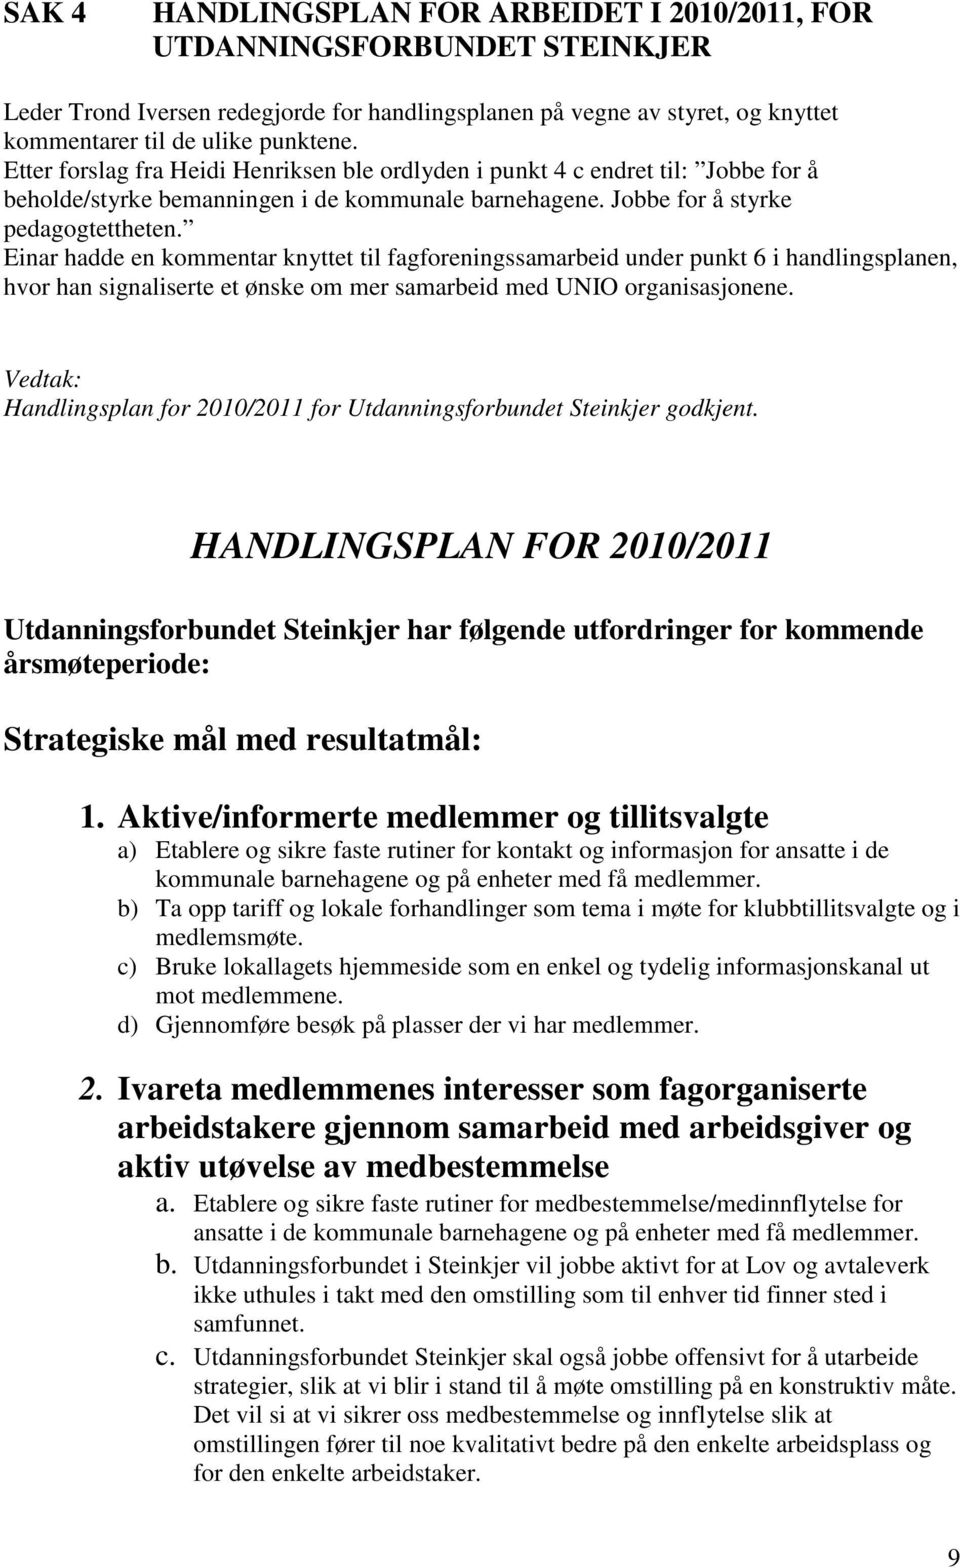 Einar hadde en kommentar knyttet til fagforeningssamarbeid under punkt 6 i handlingsplanen, hvor han signaliserte et ønske om mer samarbeid med UNIO organisasjonene.